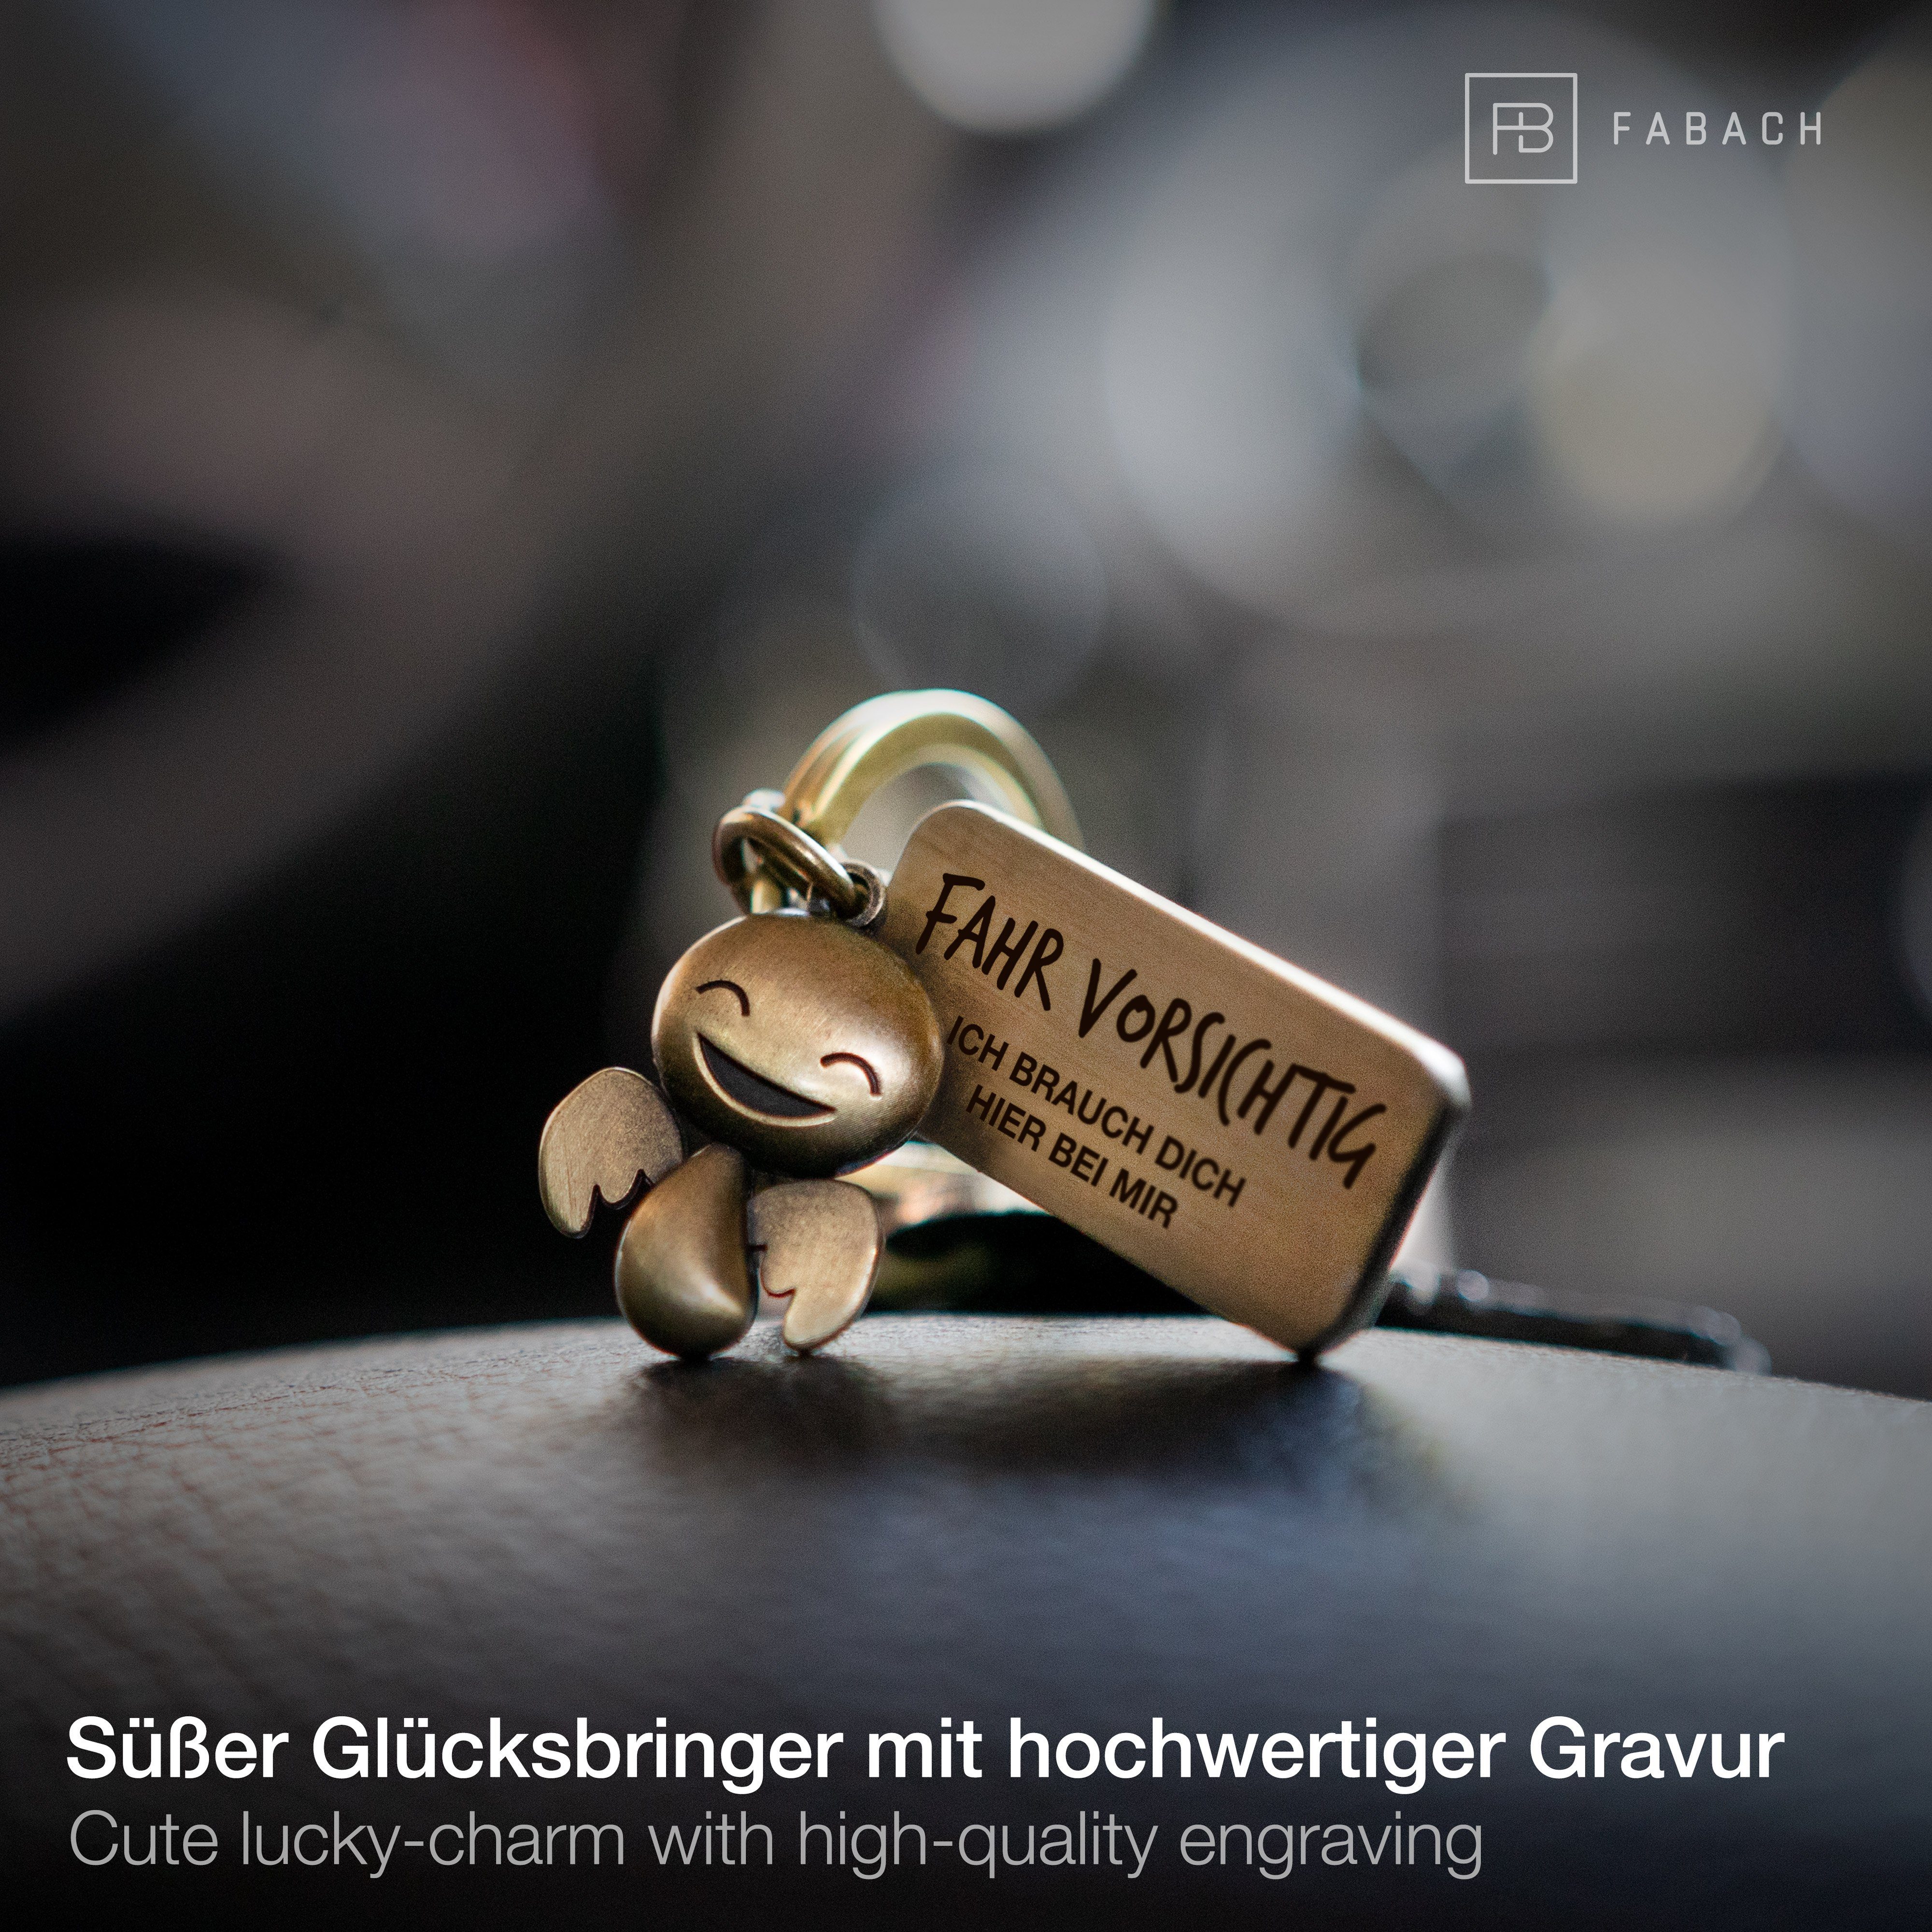 Schutzengel Geschenk Schlüsselanhänger mit Bronze Gravur Fahr Antique FABACH Happy - Führerschein vorsichtig -